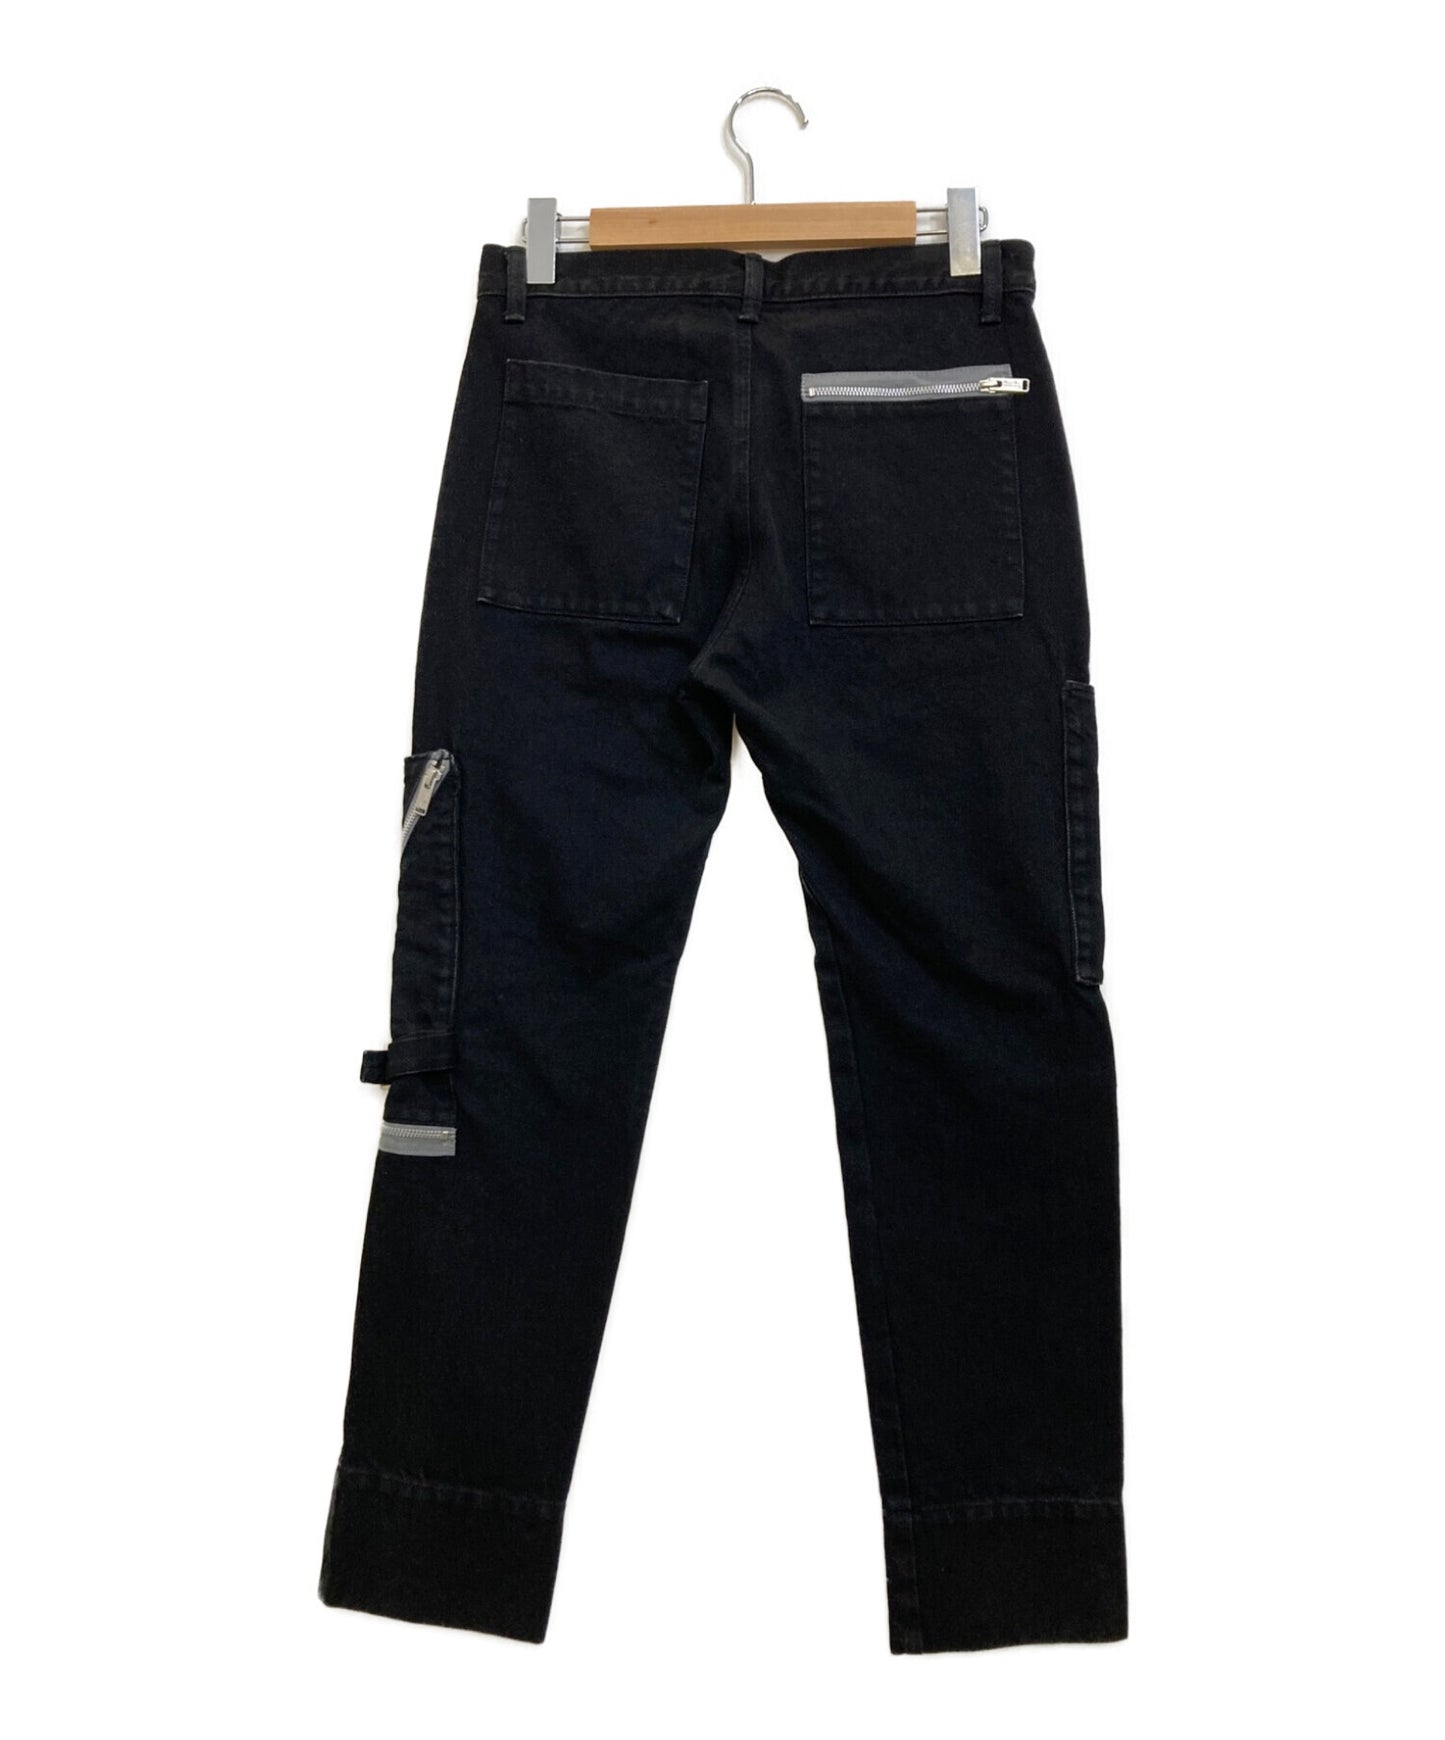 สายลับ Katsuragi Pocket Slim Pants UC2B4505-2